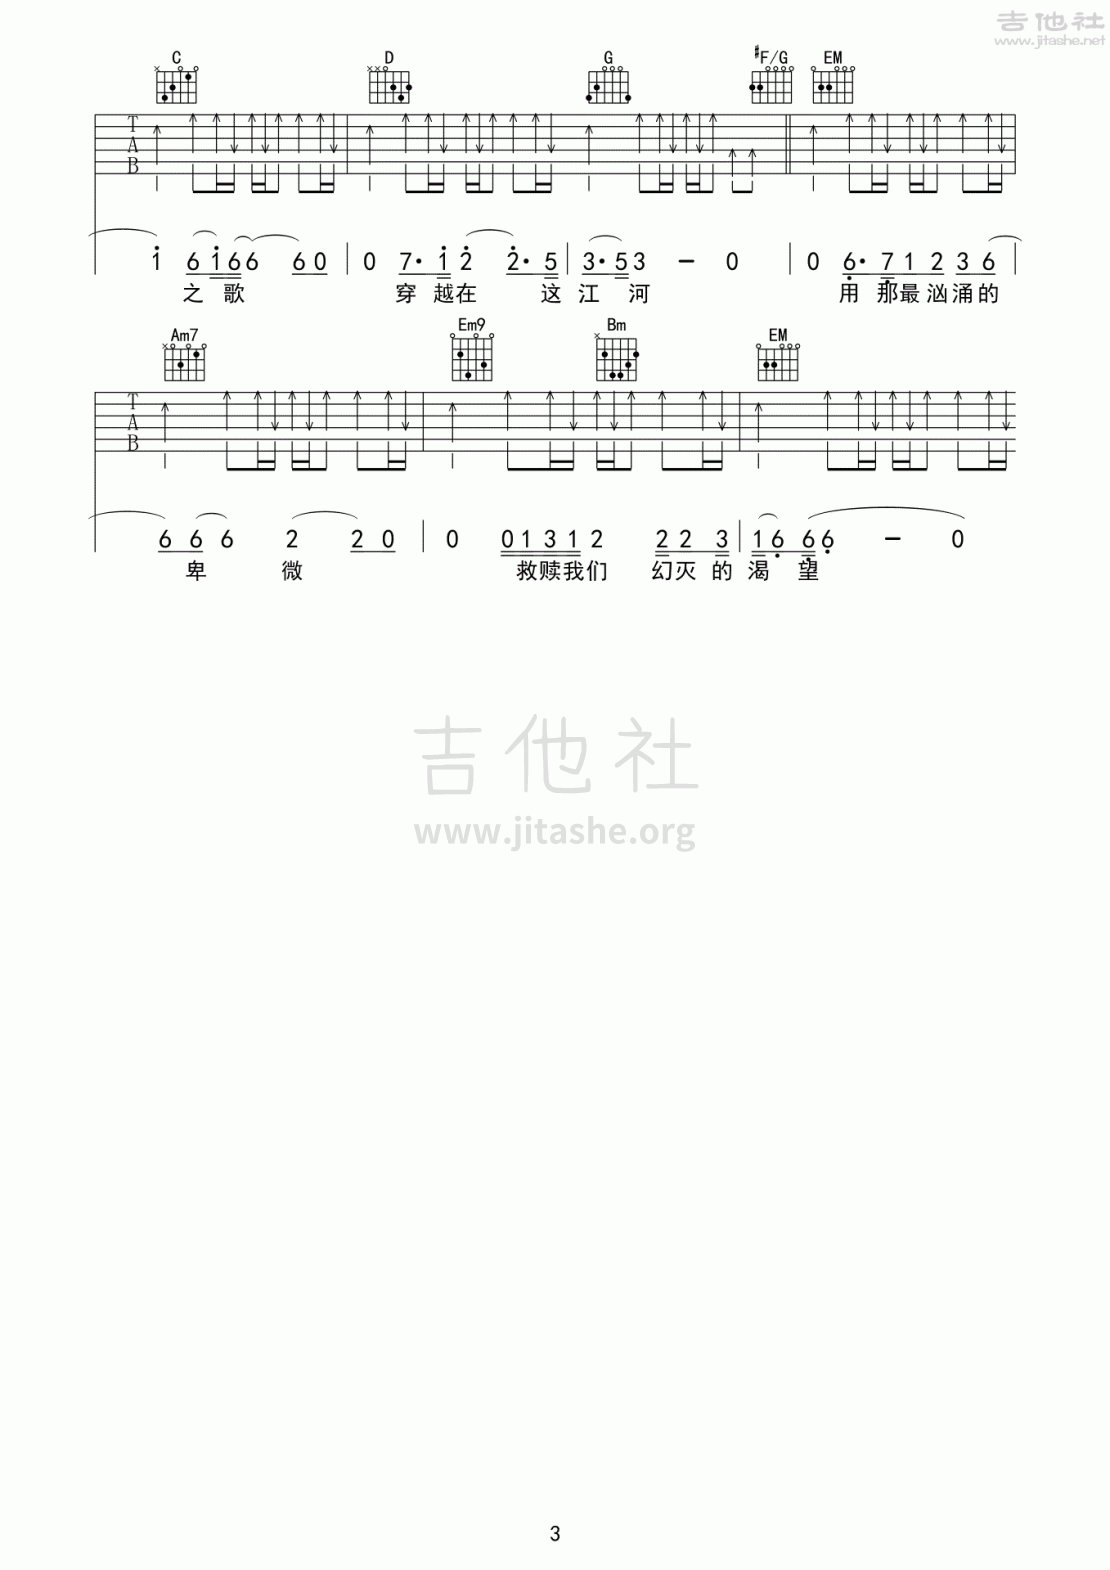 沧浪之歌(《狼图腾》主题曲)吉他谱(图片谱,弹唱,主题曲)_汪峰_沧浪之歌03.gif